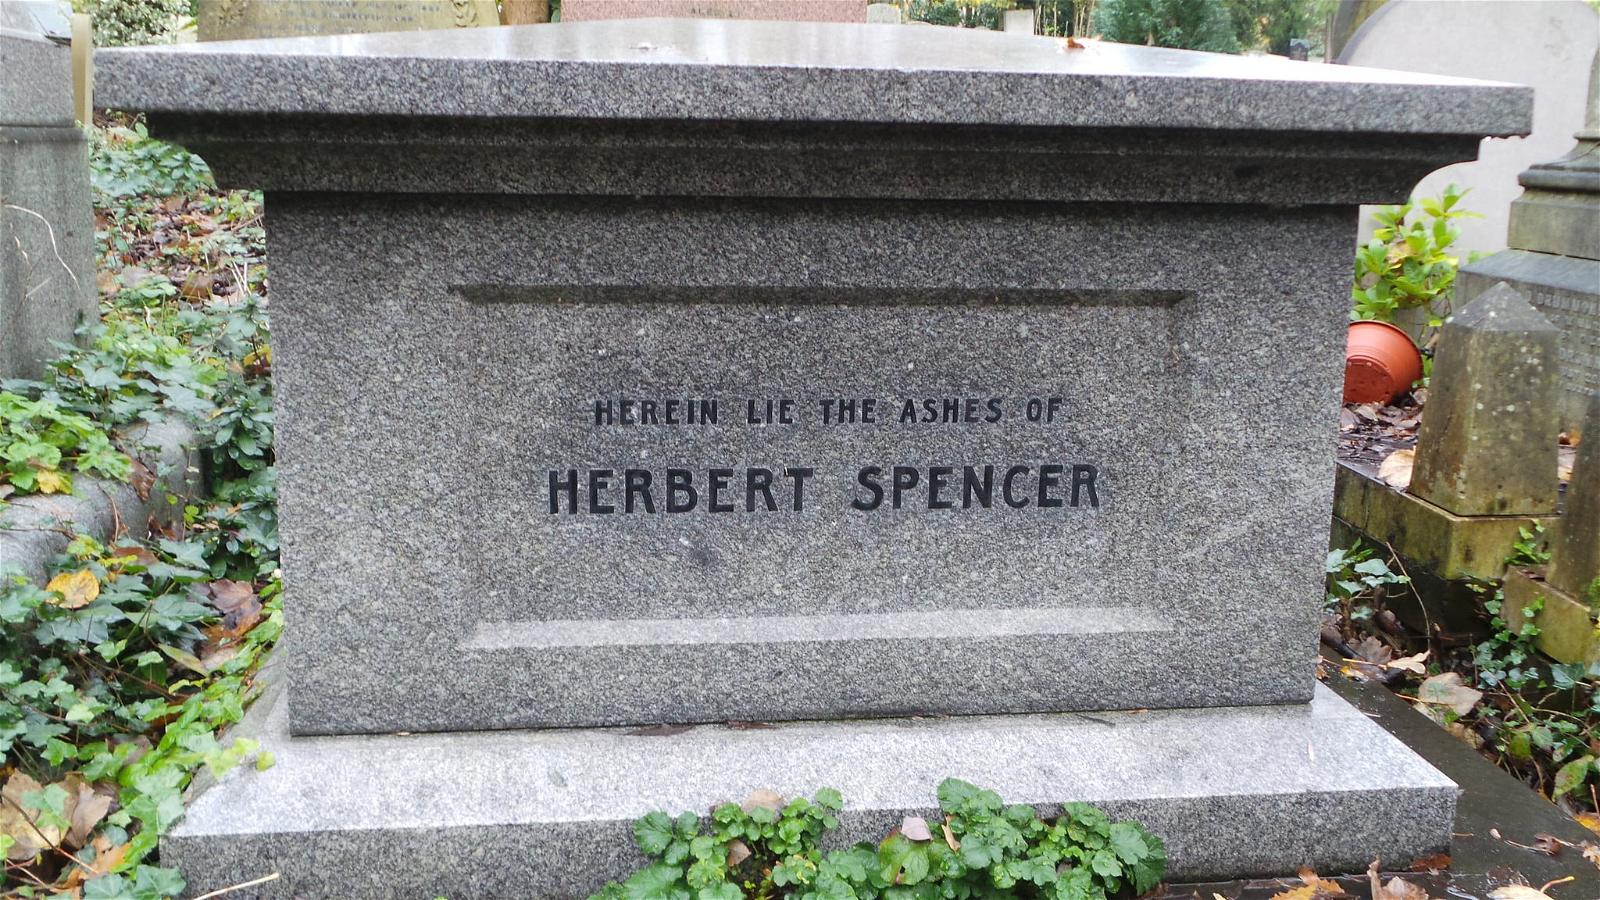 Herbert Spencer 的形象. highgate london cemetery herbertspencer